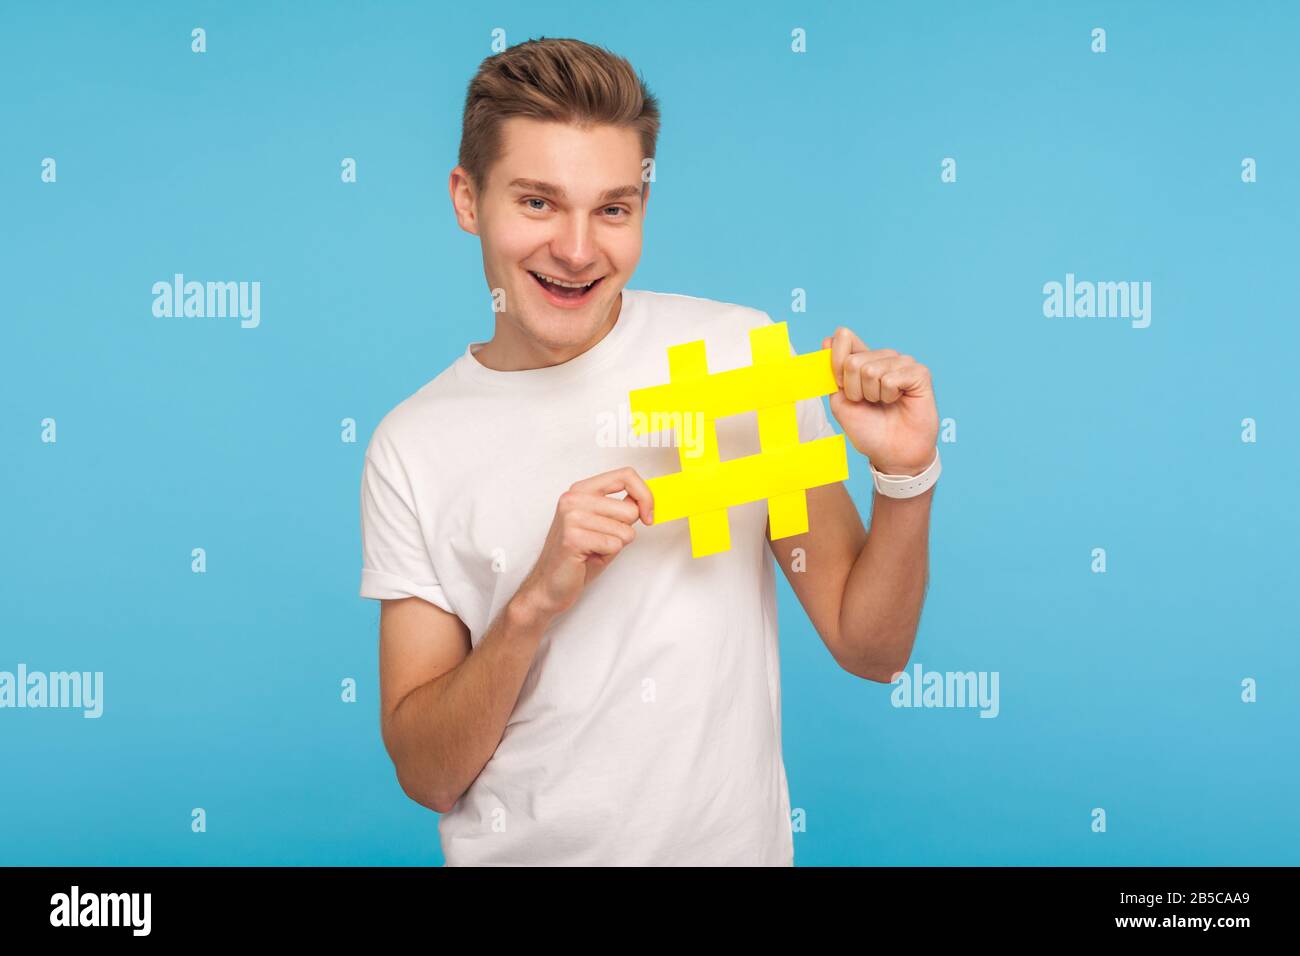 Beliebte Inhalte. Fröhlicher lustiger Mann in weißem T-Shirt mit großem gelben Hashtag-Symbol und lächelnd, Hash-Zeichen von Internettrends, viralen Social Media-topi Stockfoto